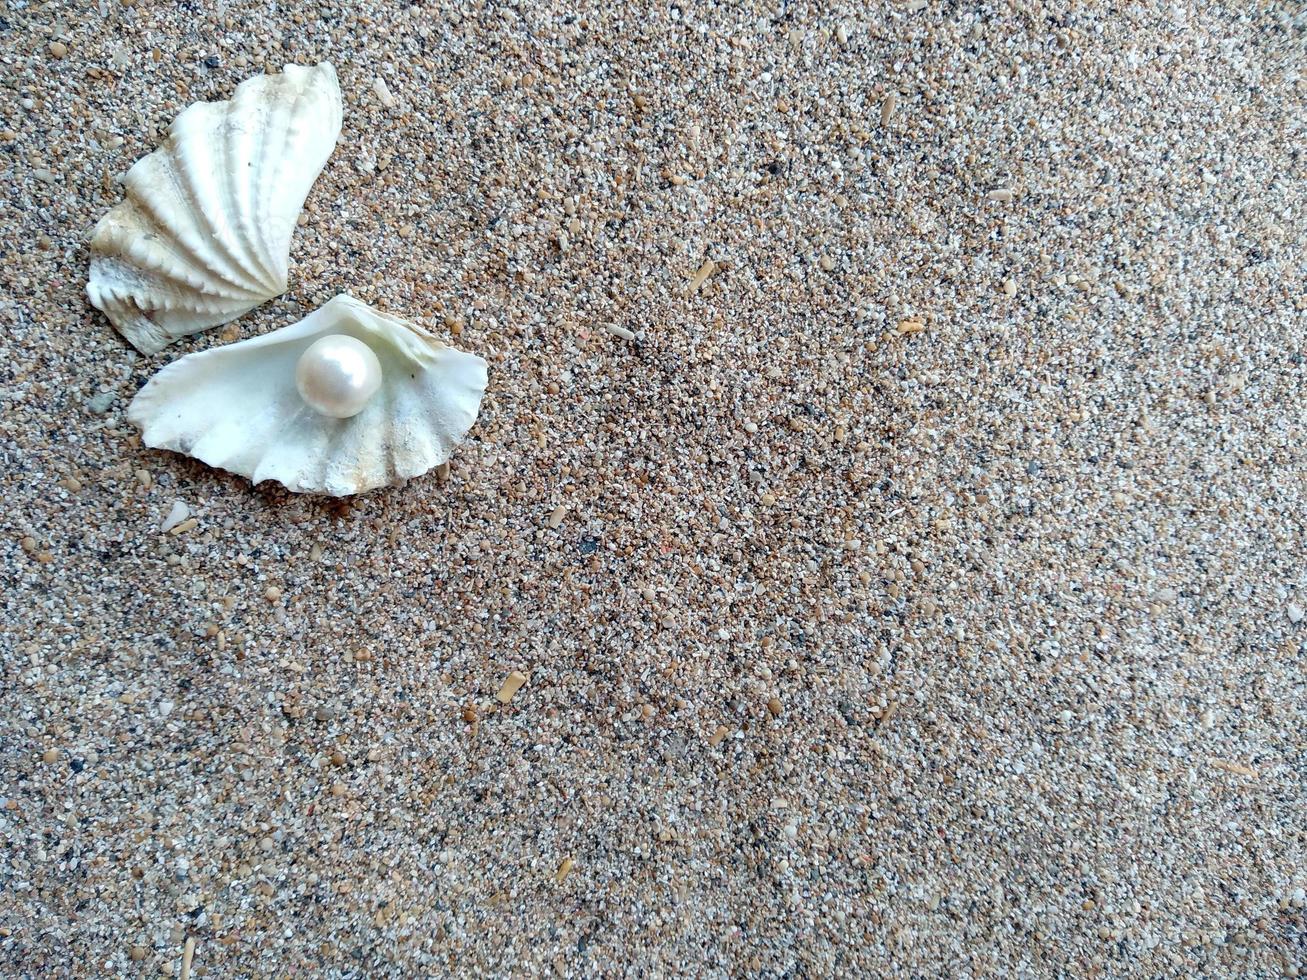 concha com uma pérola na areia da praia foto